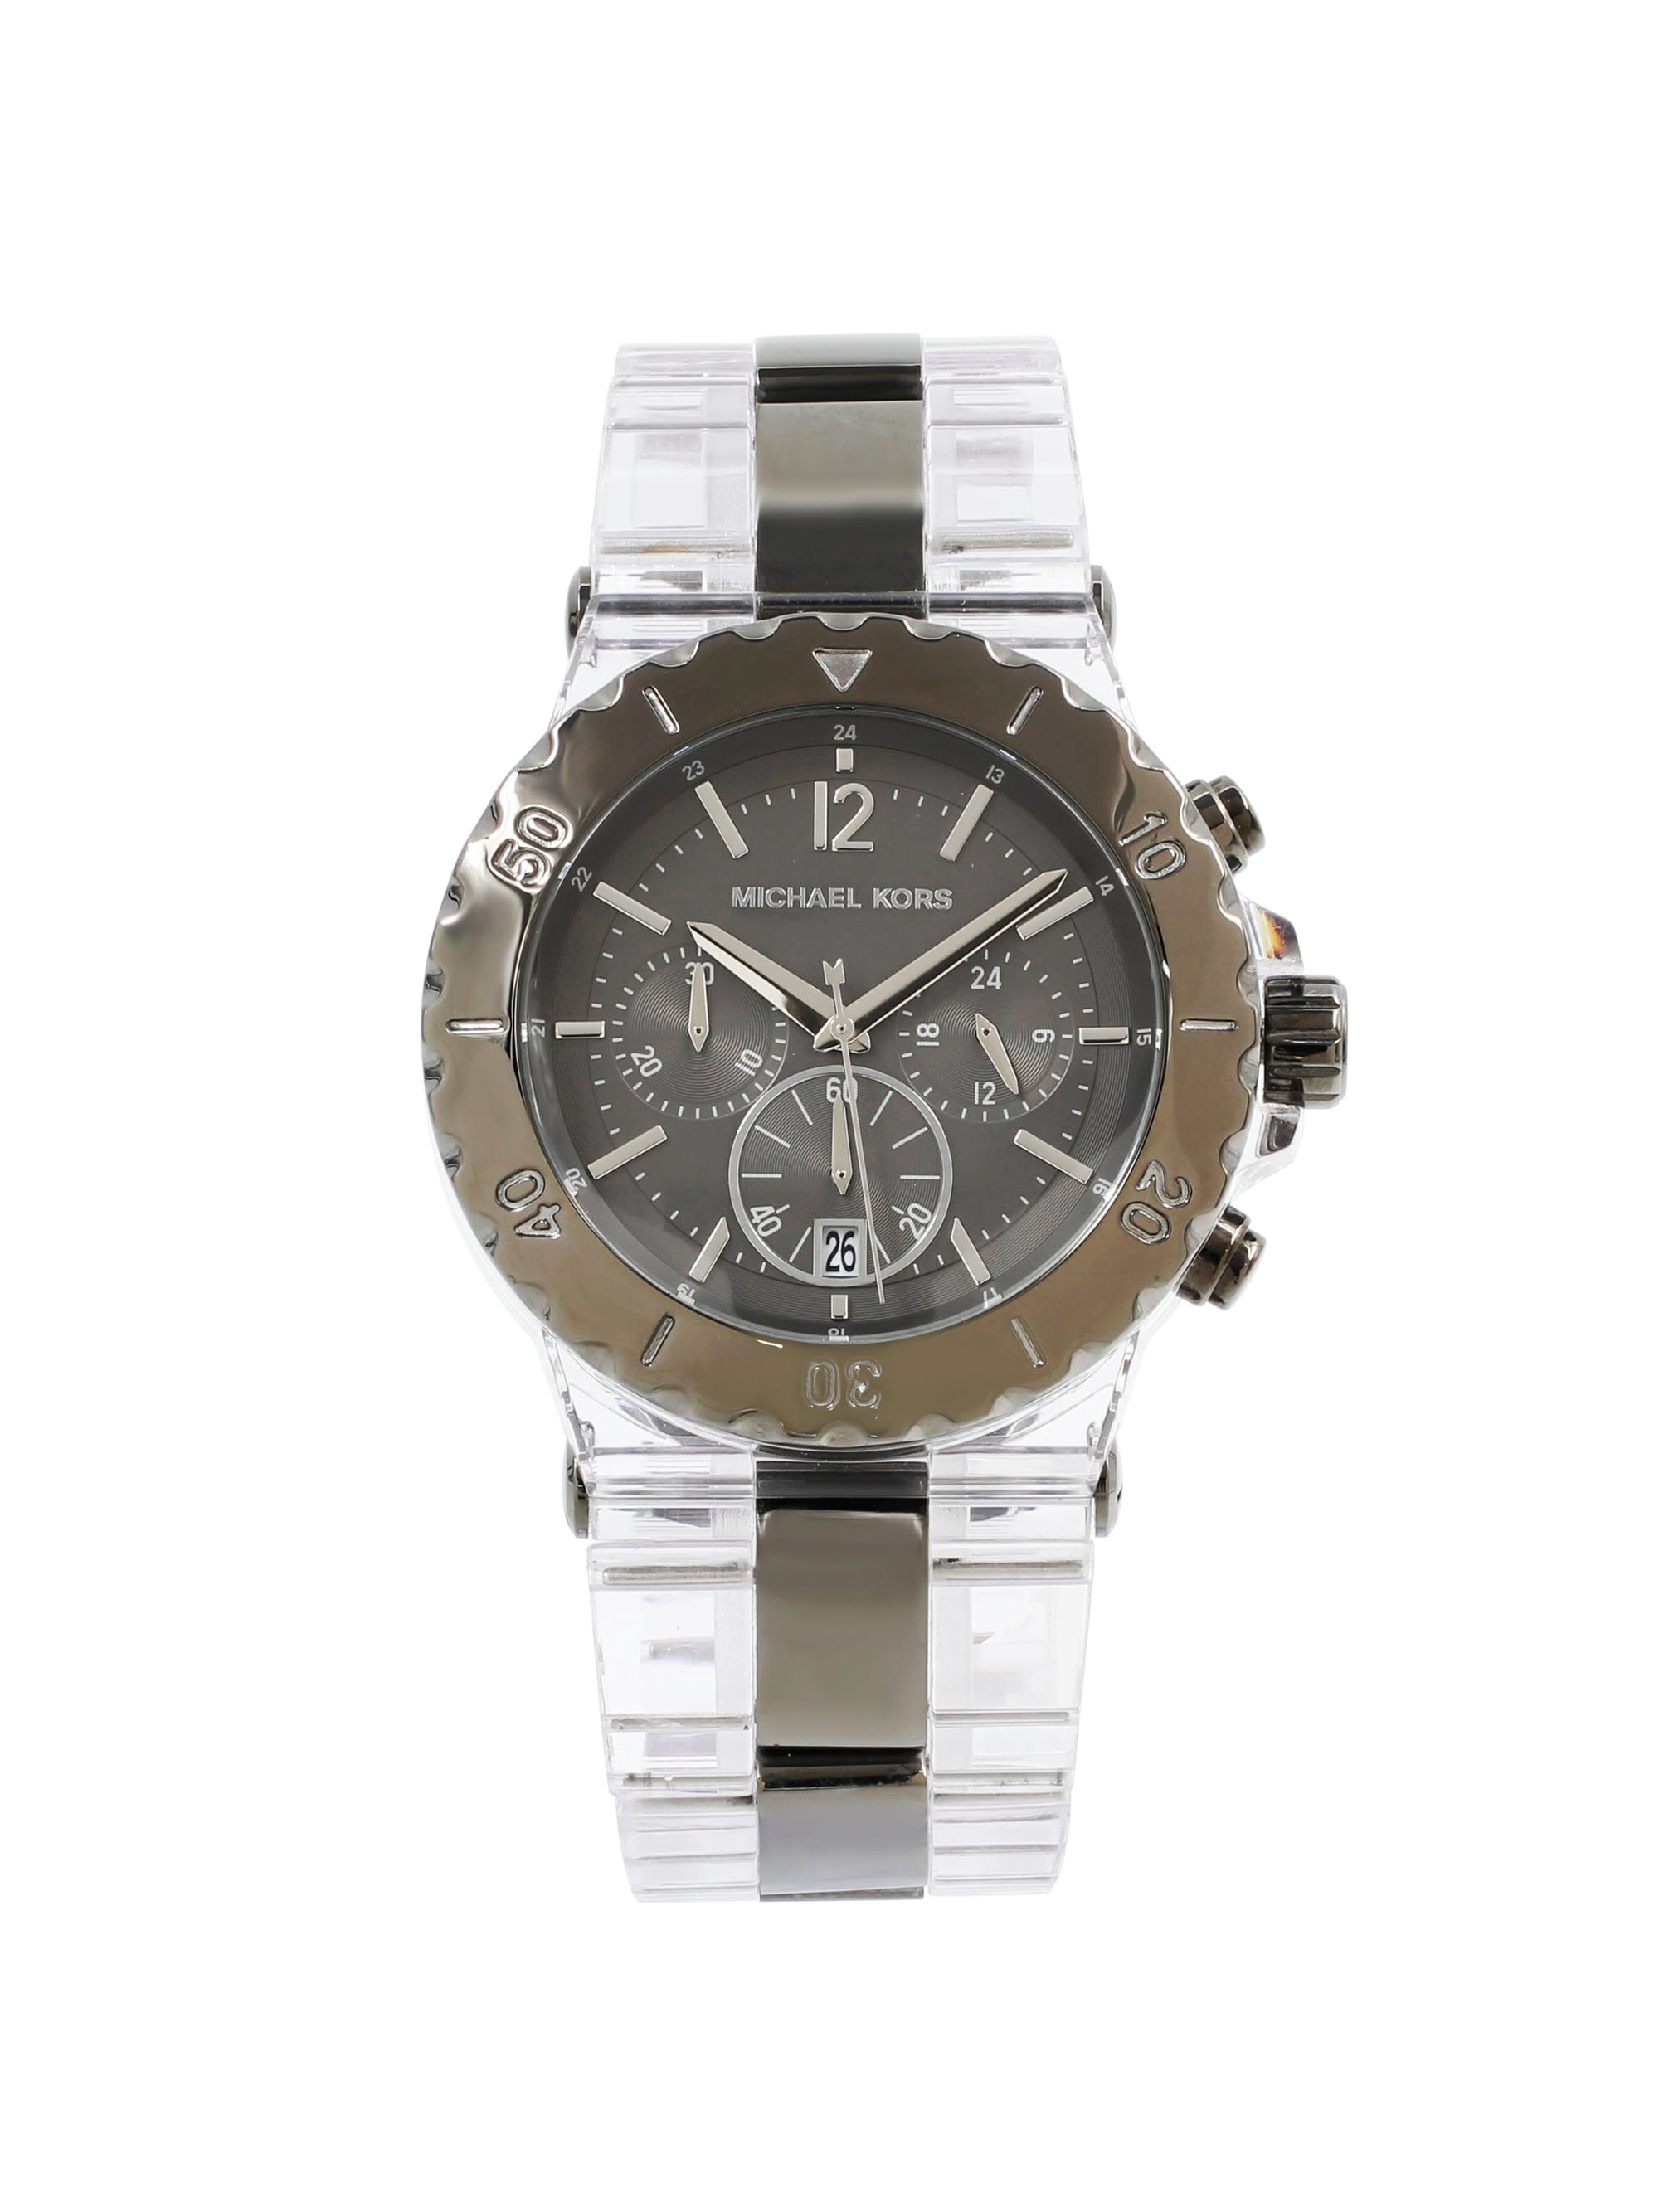 Michael Kors Bel Aire Clear Acrylic Dial Quartz Watch MK5500 - Walmart.com